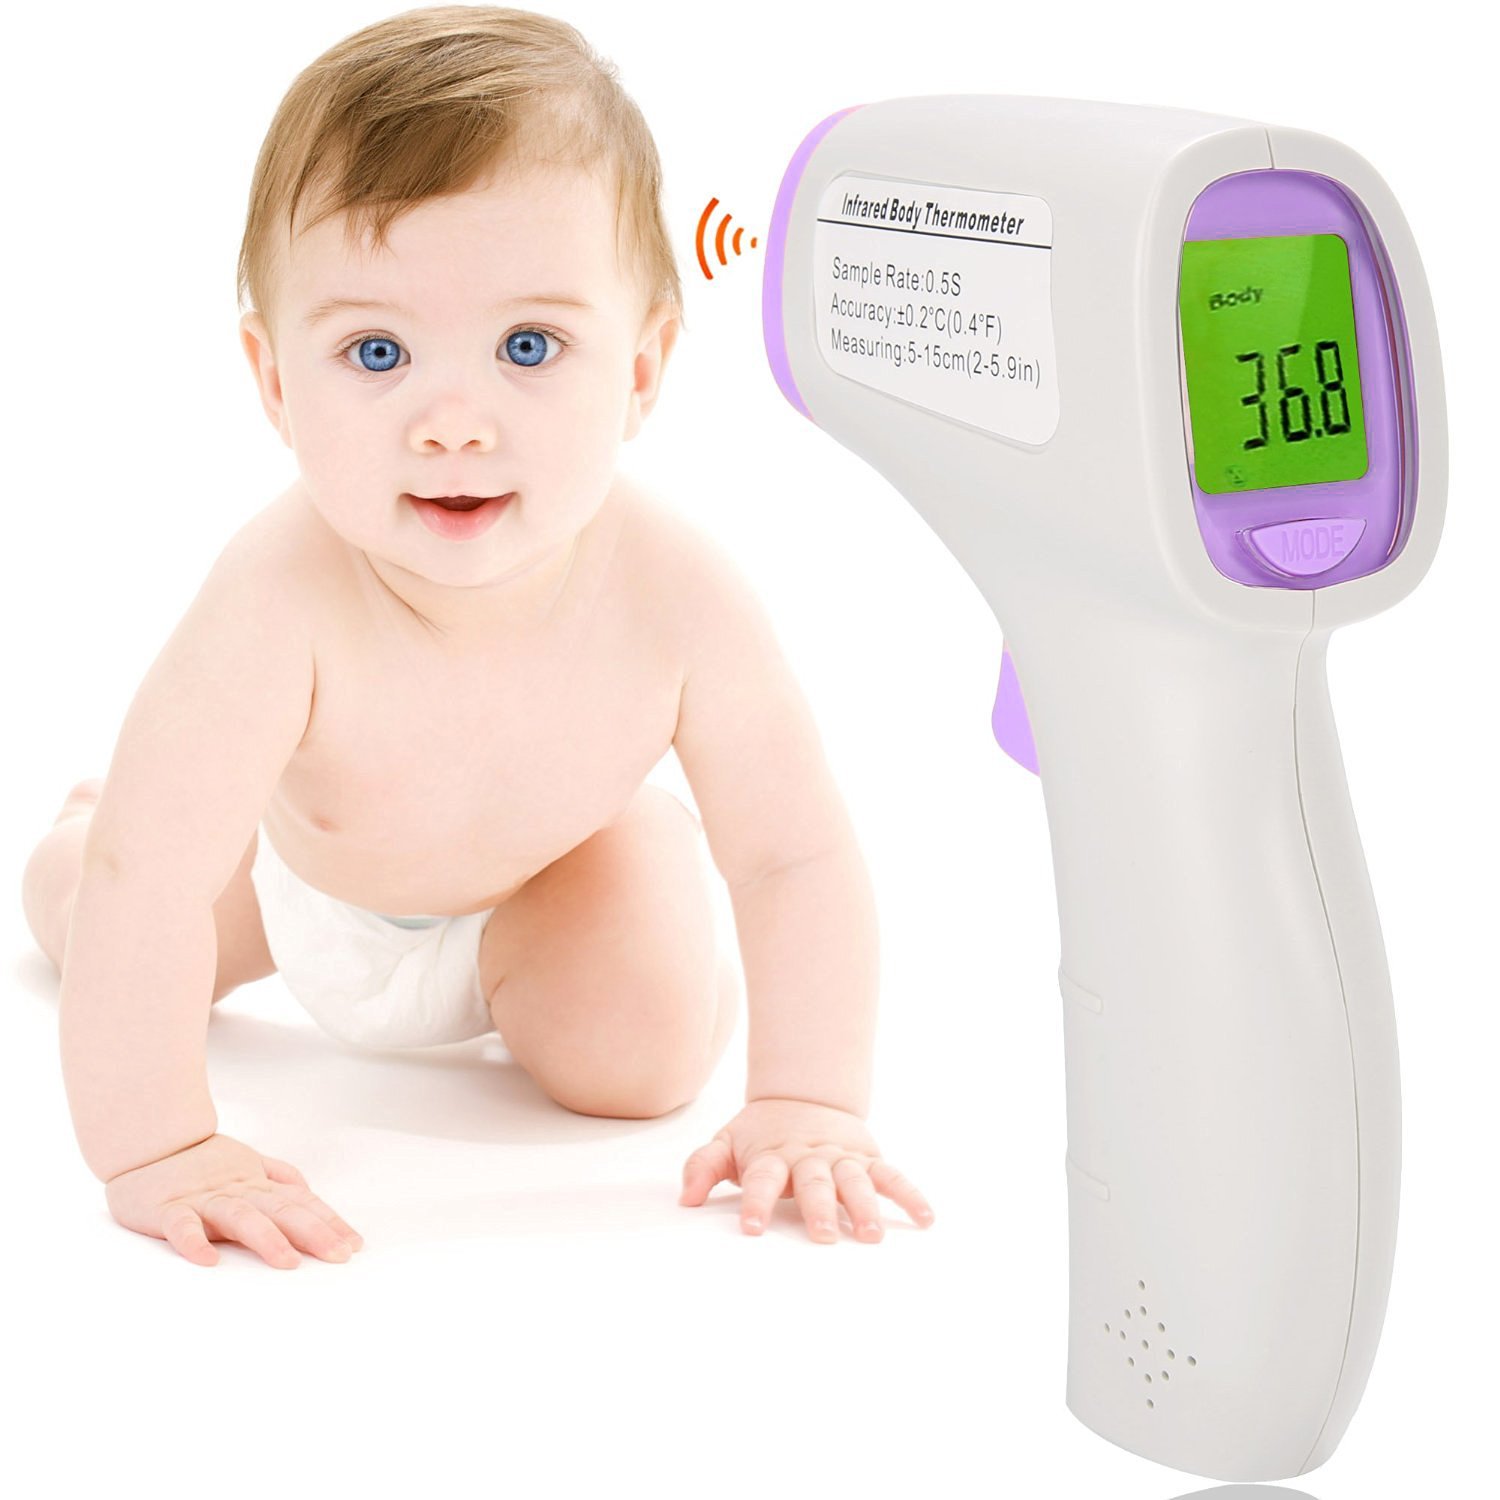 Comment utiliser un thermomètre bébé ?